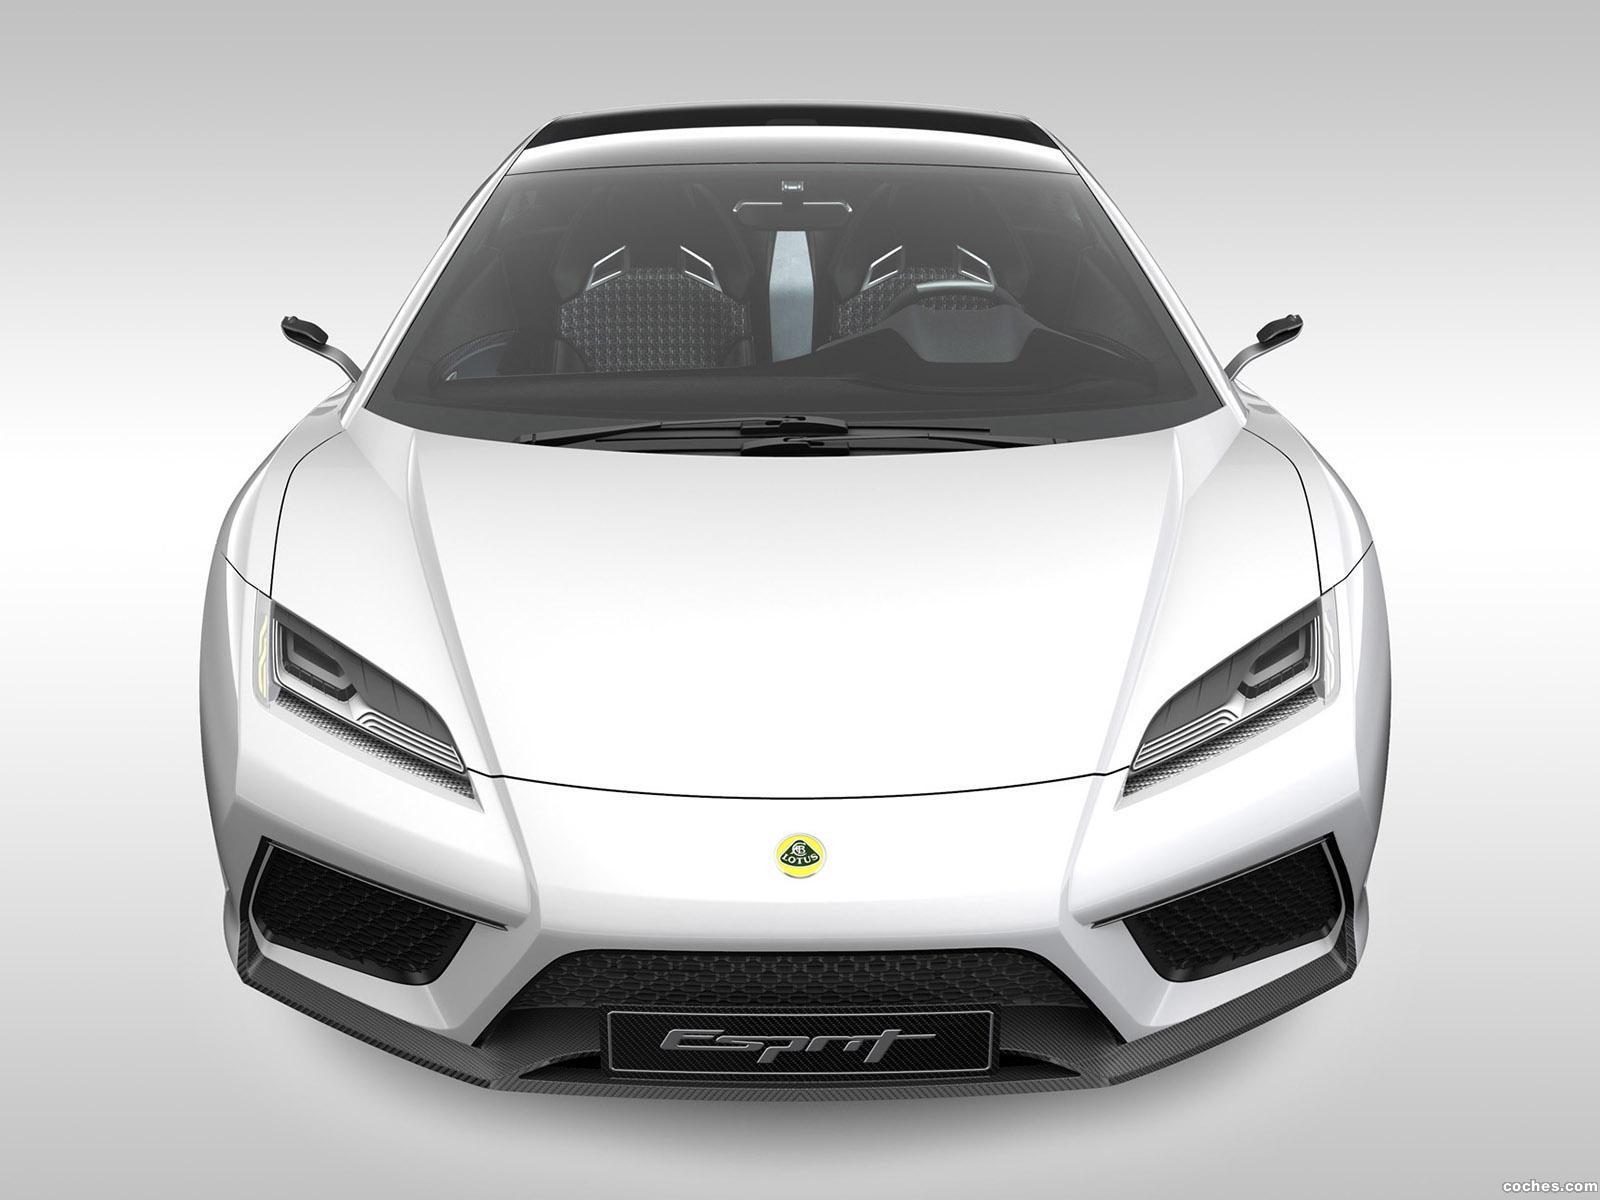 2010 Lotus Esprit Concept